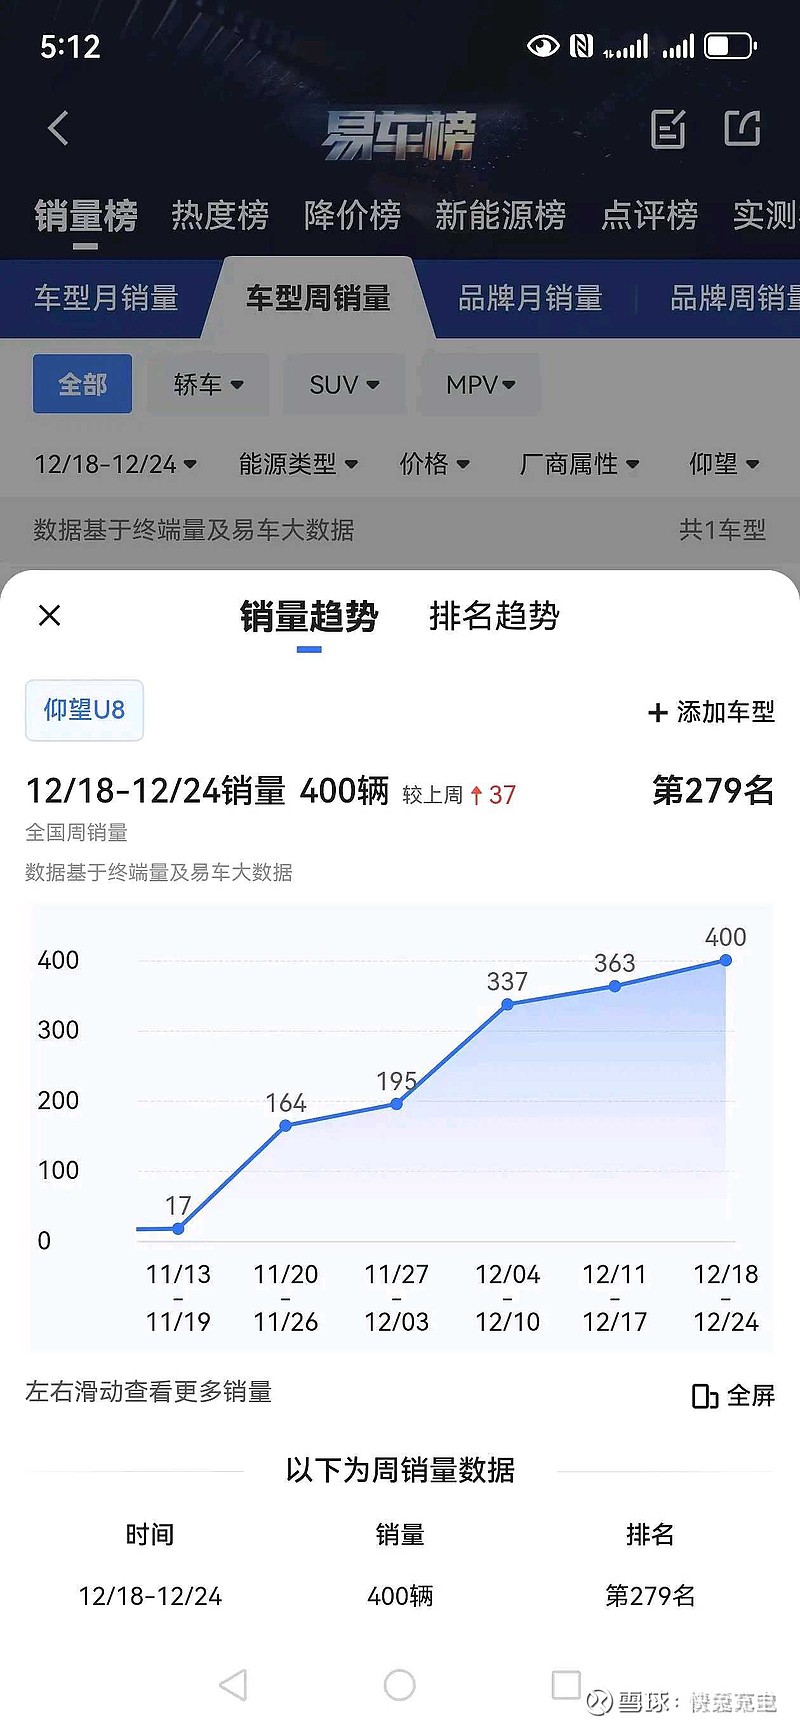 中国一个月百万以上的豪车销量只